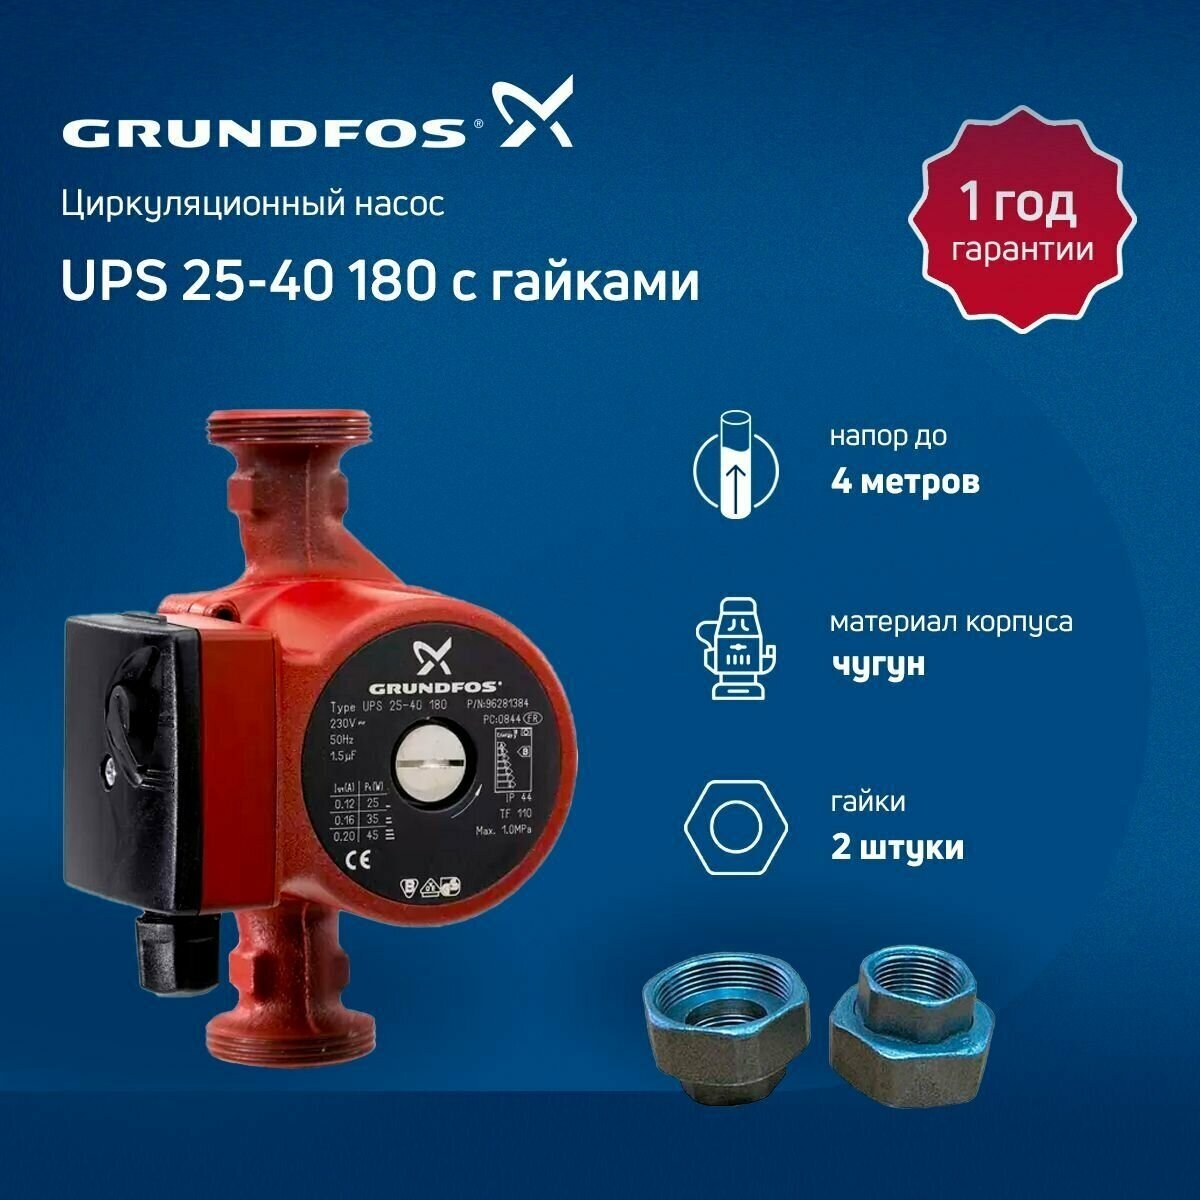 Циркуляционный насос с гайками Grundfos UPS 25-40 180